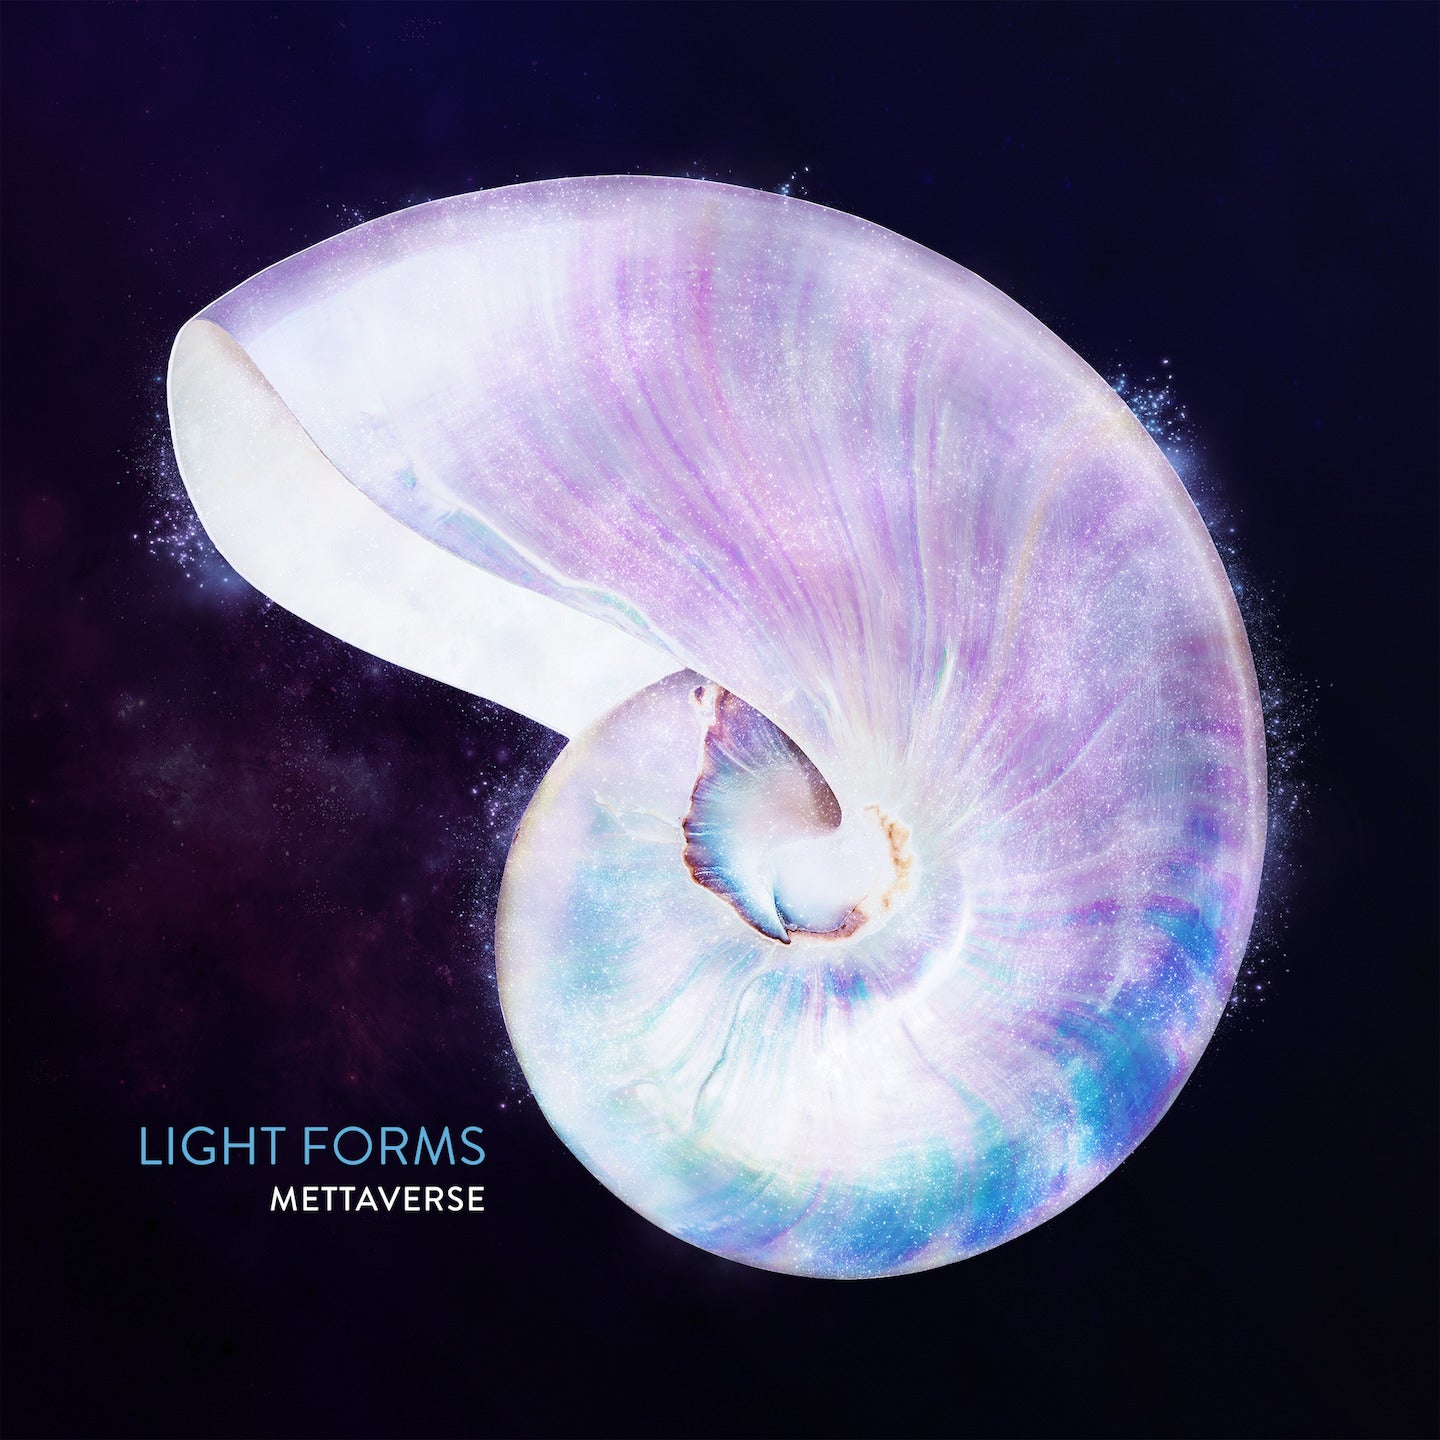 Mettaverse LightForms Language Of Light